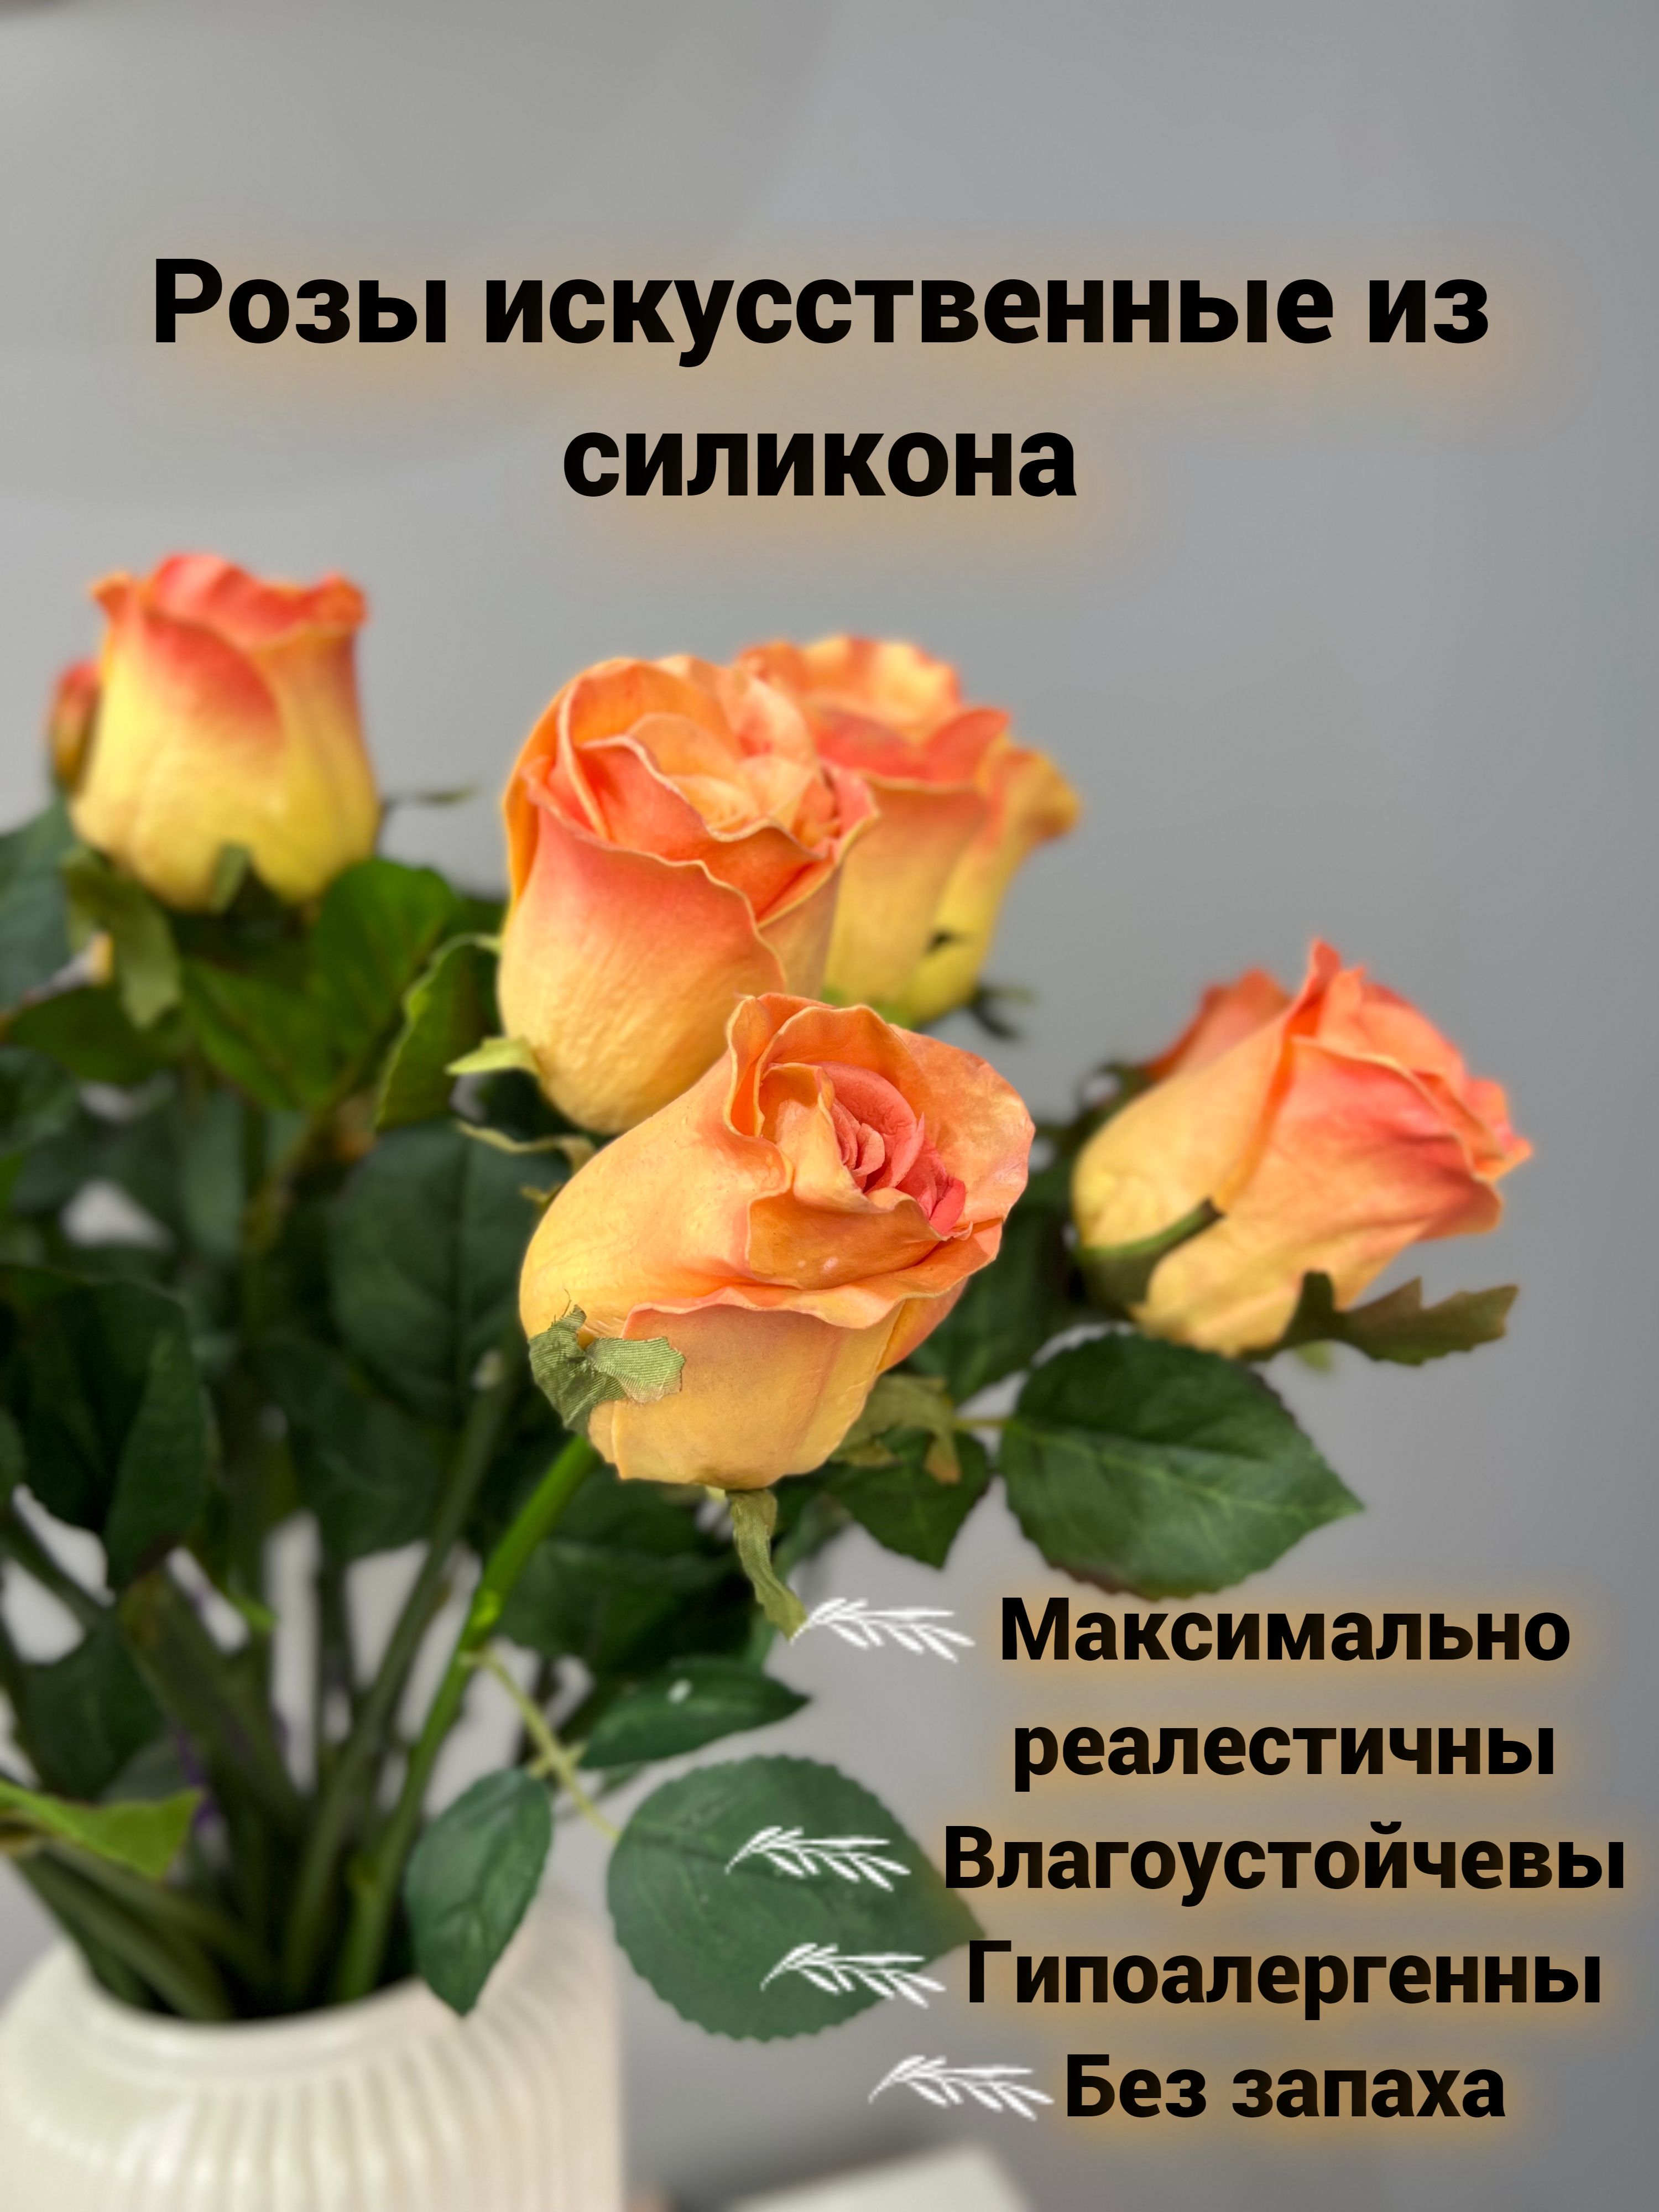 Купить розы из латекса в Украине. Цена в интернет магазине баштрен.рф - УкрДекор